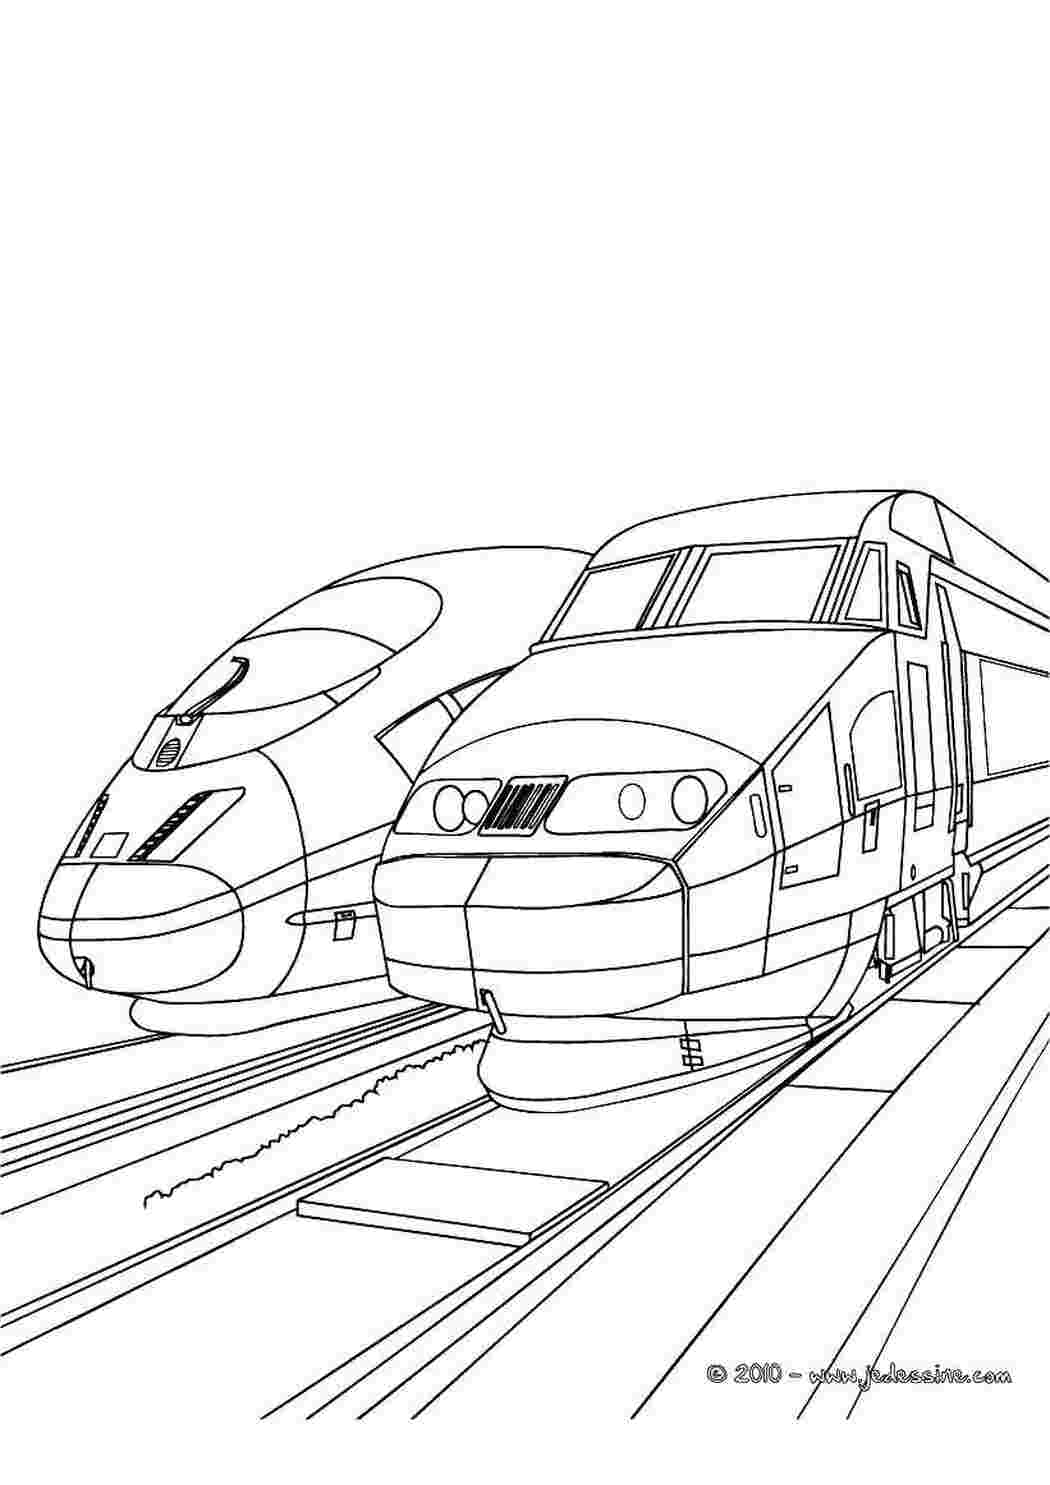 Раскраски Два поезда поезд поезда, рельсы, транспорт